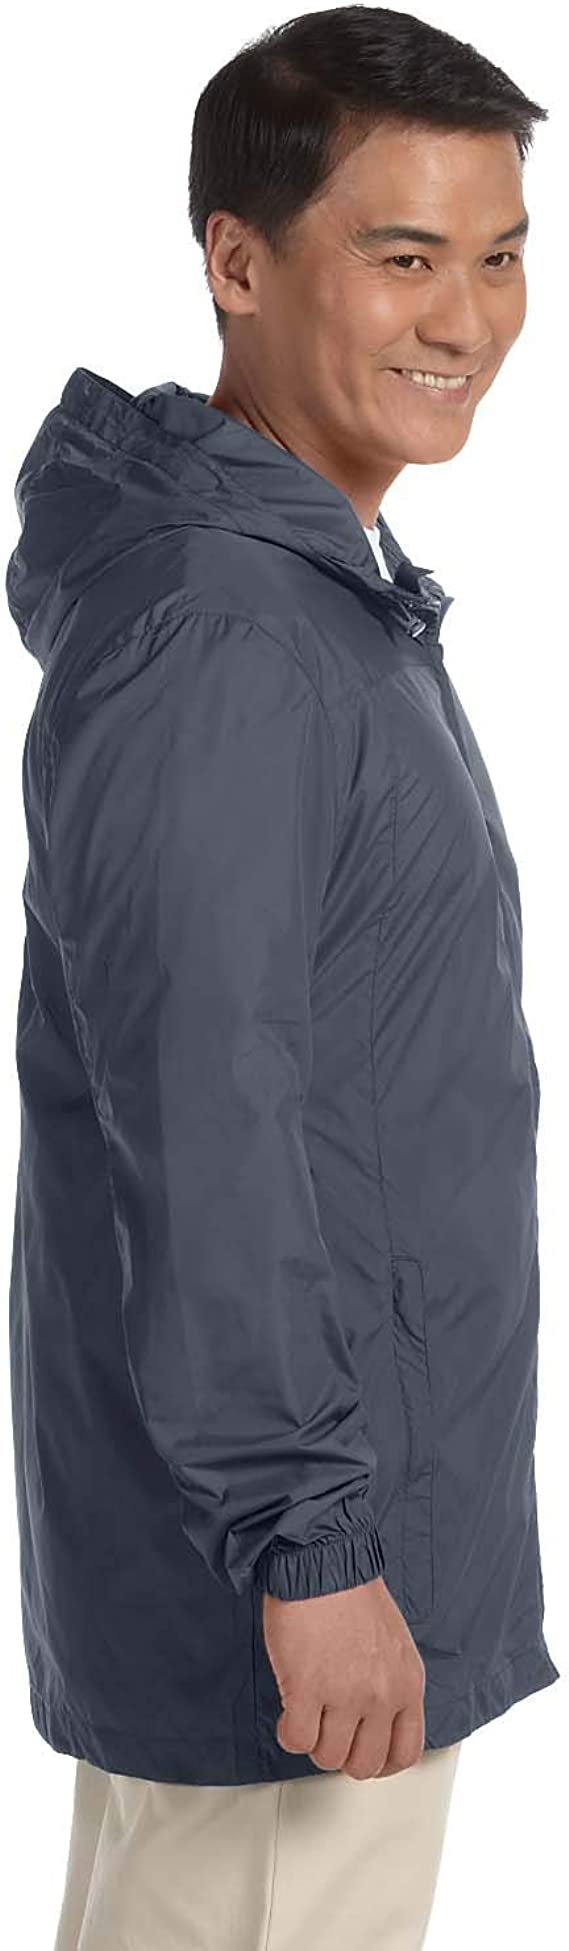 Harriton M765 Men's Essential Rainwear New